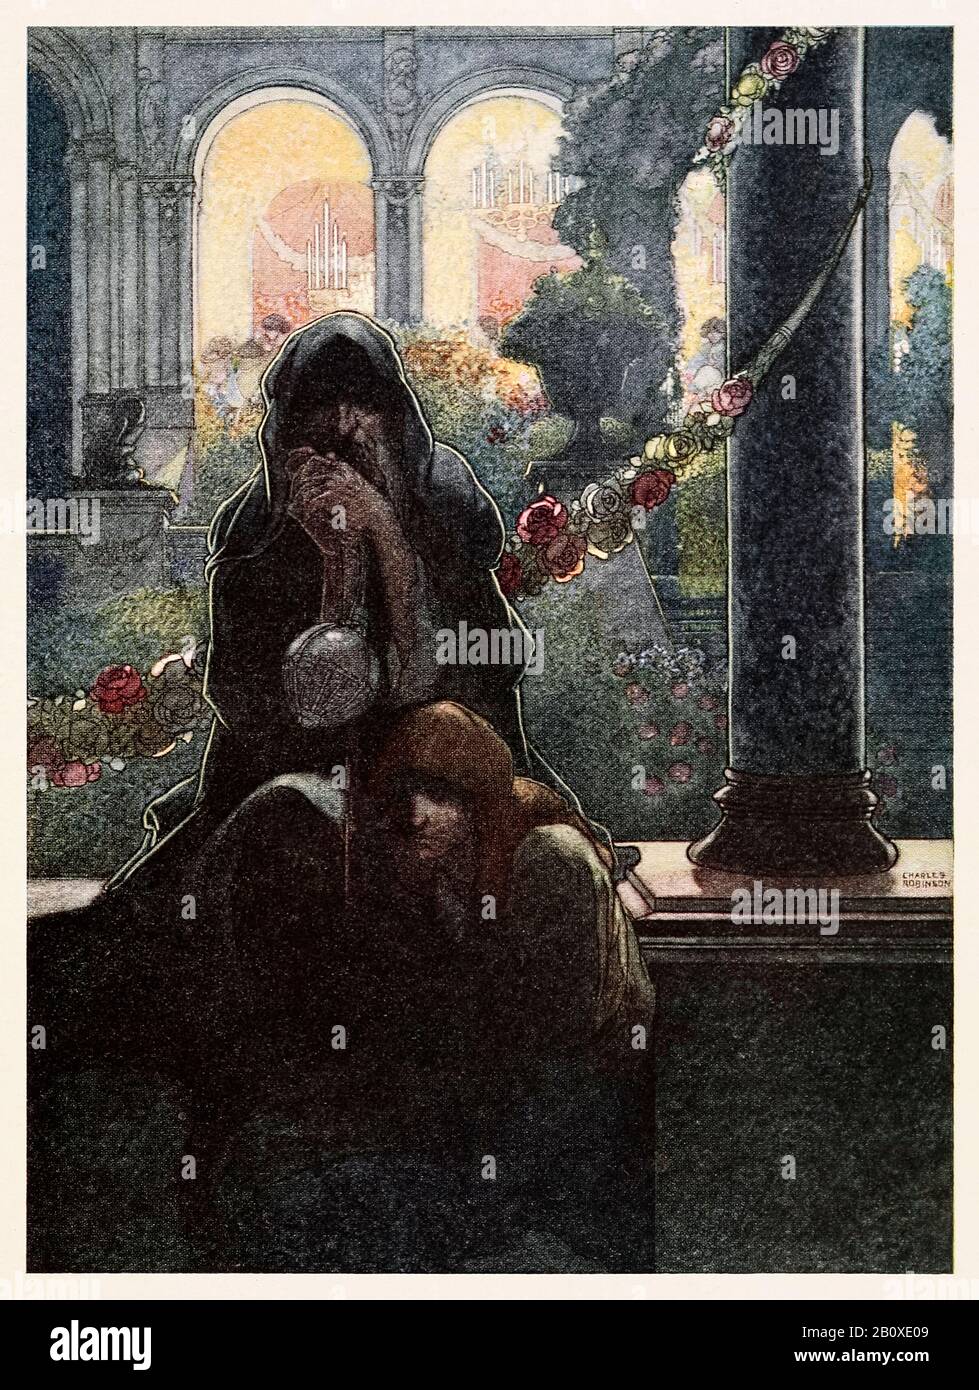 "Die reichen, die in ihren schönen Häusern fröhlich waren, während die Bettler am Tor saßen" vom Happy Prince und Anderen Tales von Oscar Wilde (1854-1900), illustriert von Charles Robinson (1870-1937). Weitere Informationen finden Sie weiter unten. Stockfoto